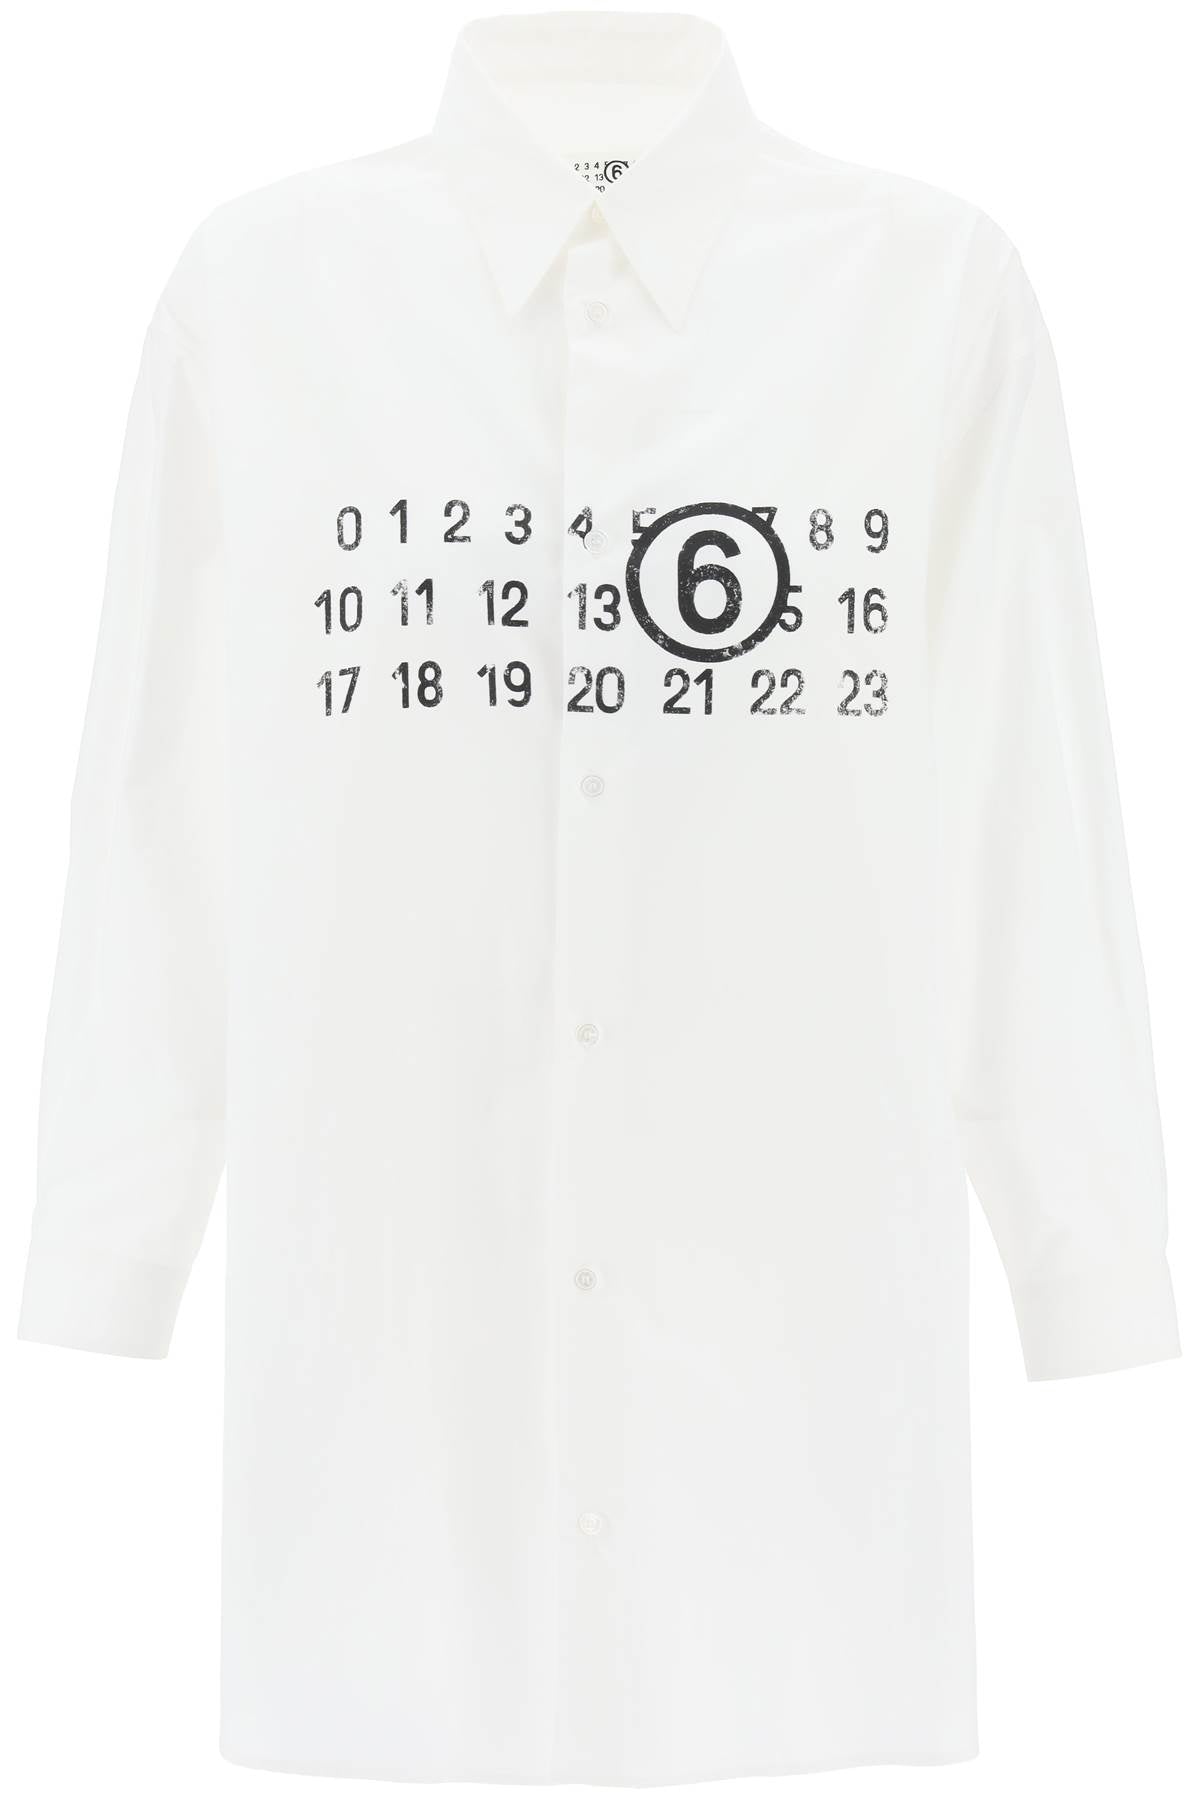 白色迷你衬衫连衣裙，带有数字标志印花